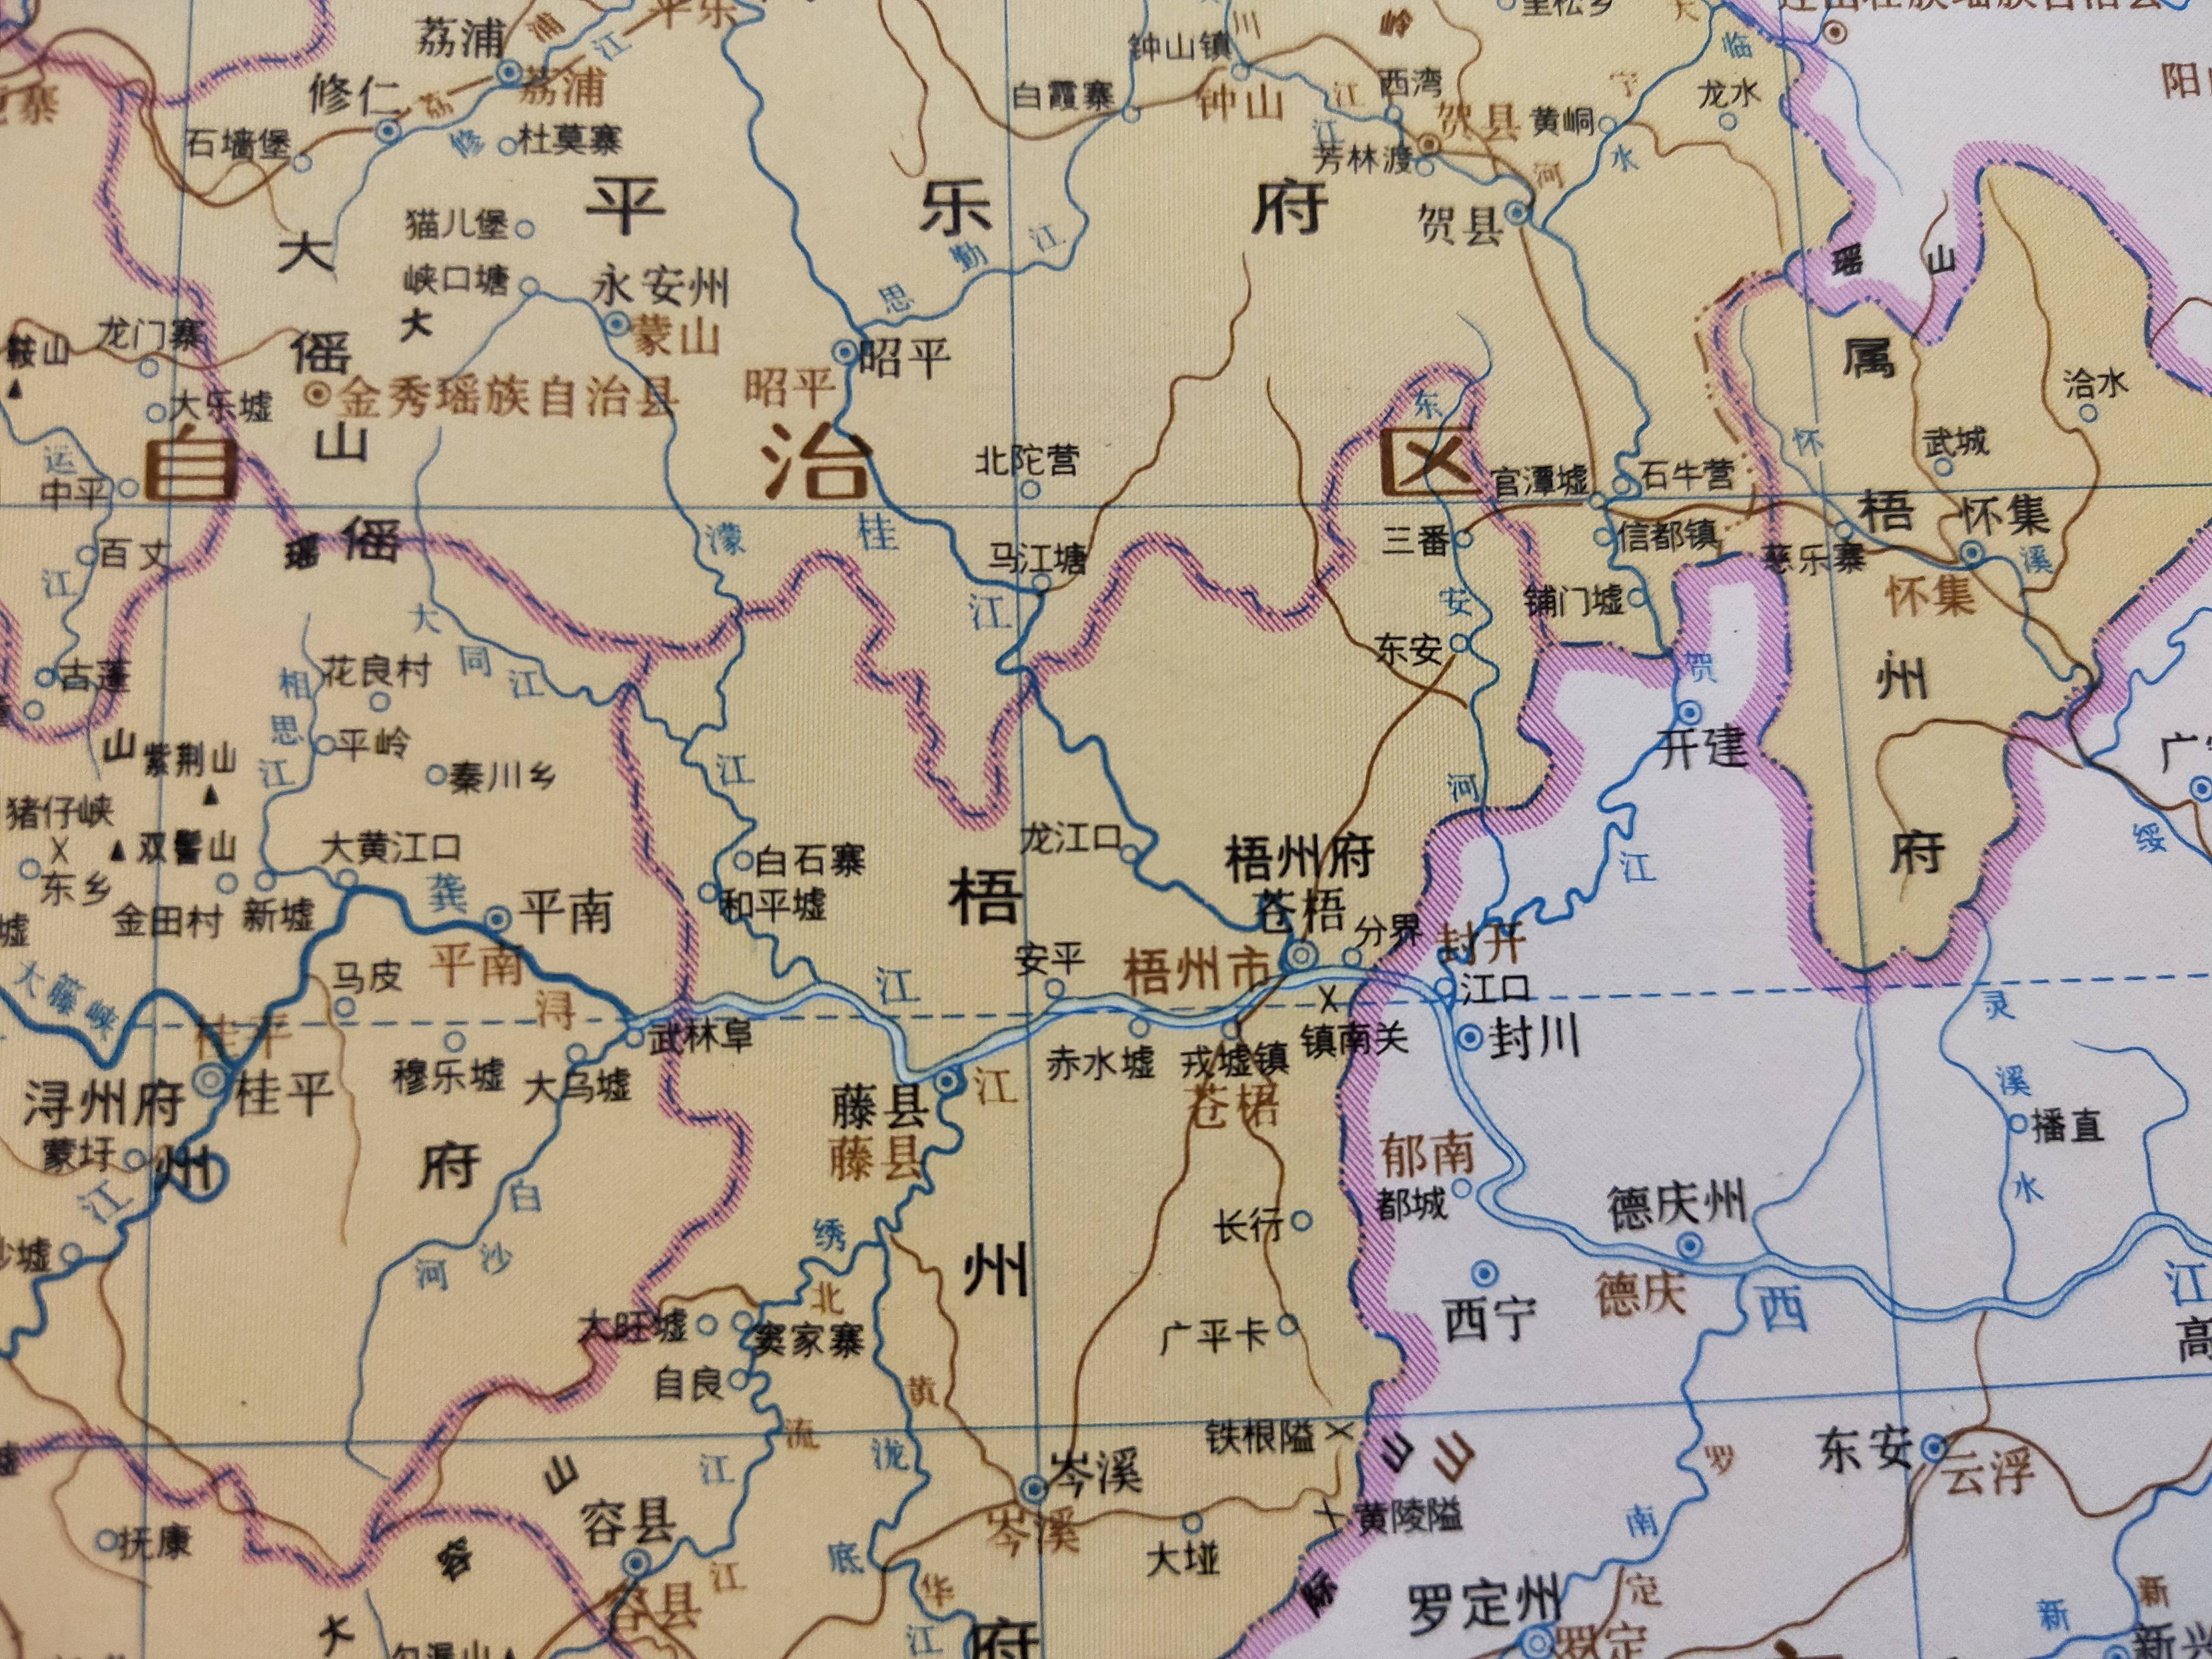 在行政区划上,清代基本上继承了明朝的制度,梧州属广西梧州府